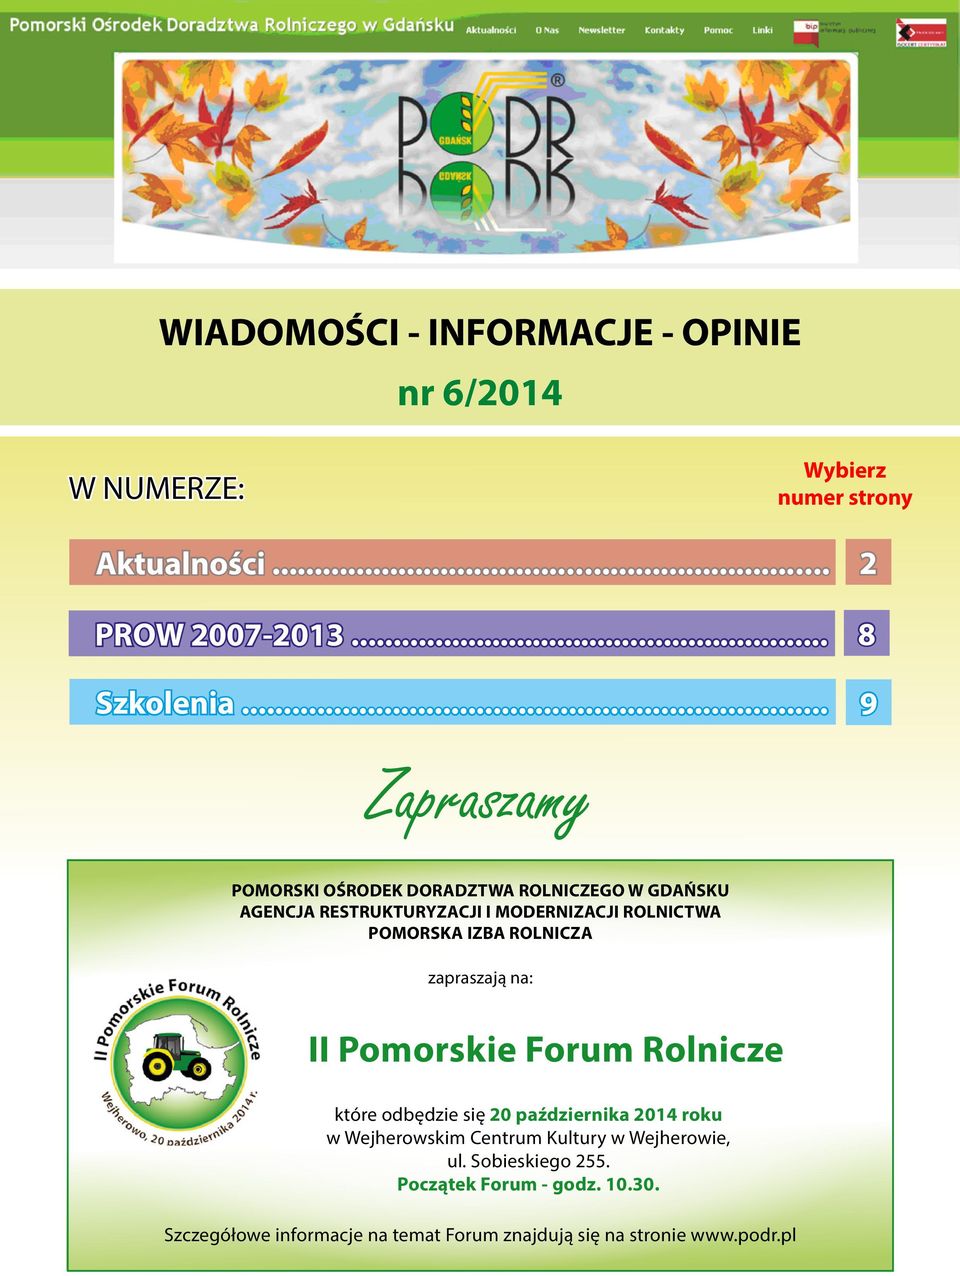 zapraszają na: II Pomorskie Forum Rolnicze które odbędzie się 20 października 2014 roku w Wejherowskim Centrum Kultury w Wejherowie, ul.